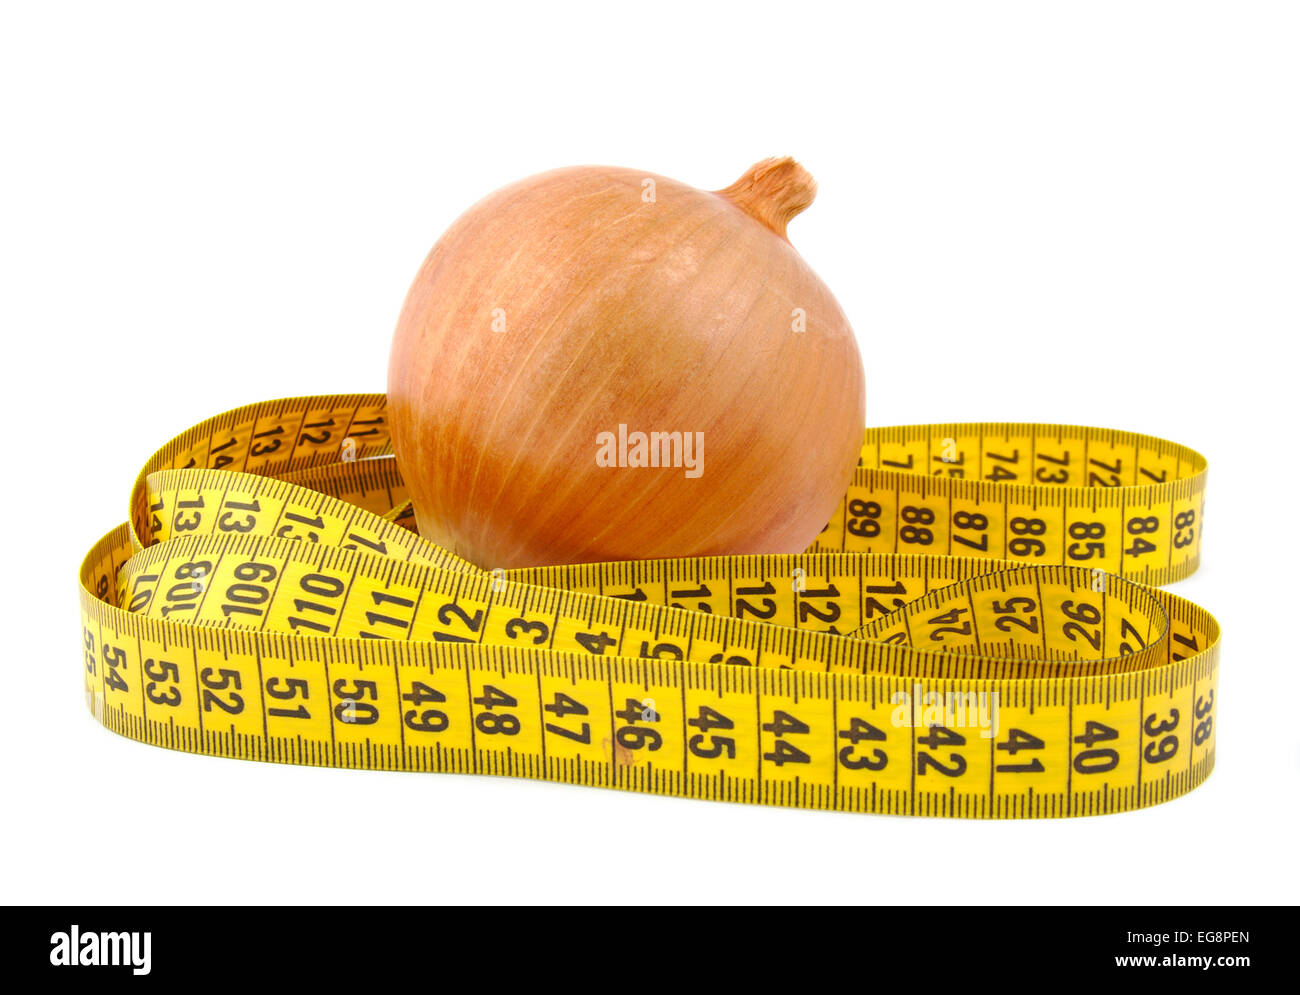 Zwiebel und Maßband auf einem hellen Hintergrund Stockfoto